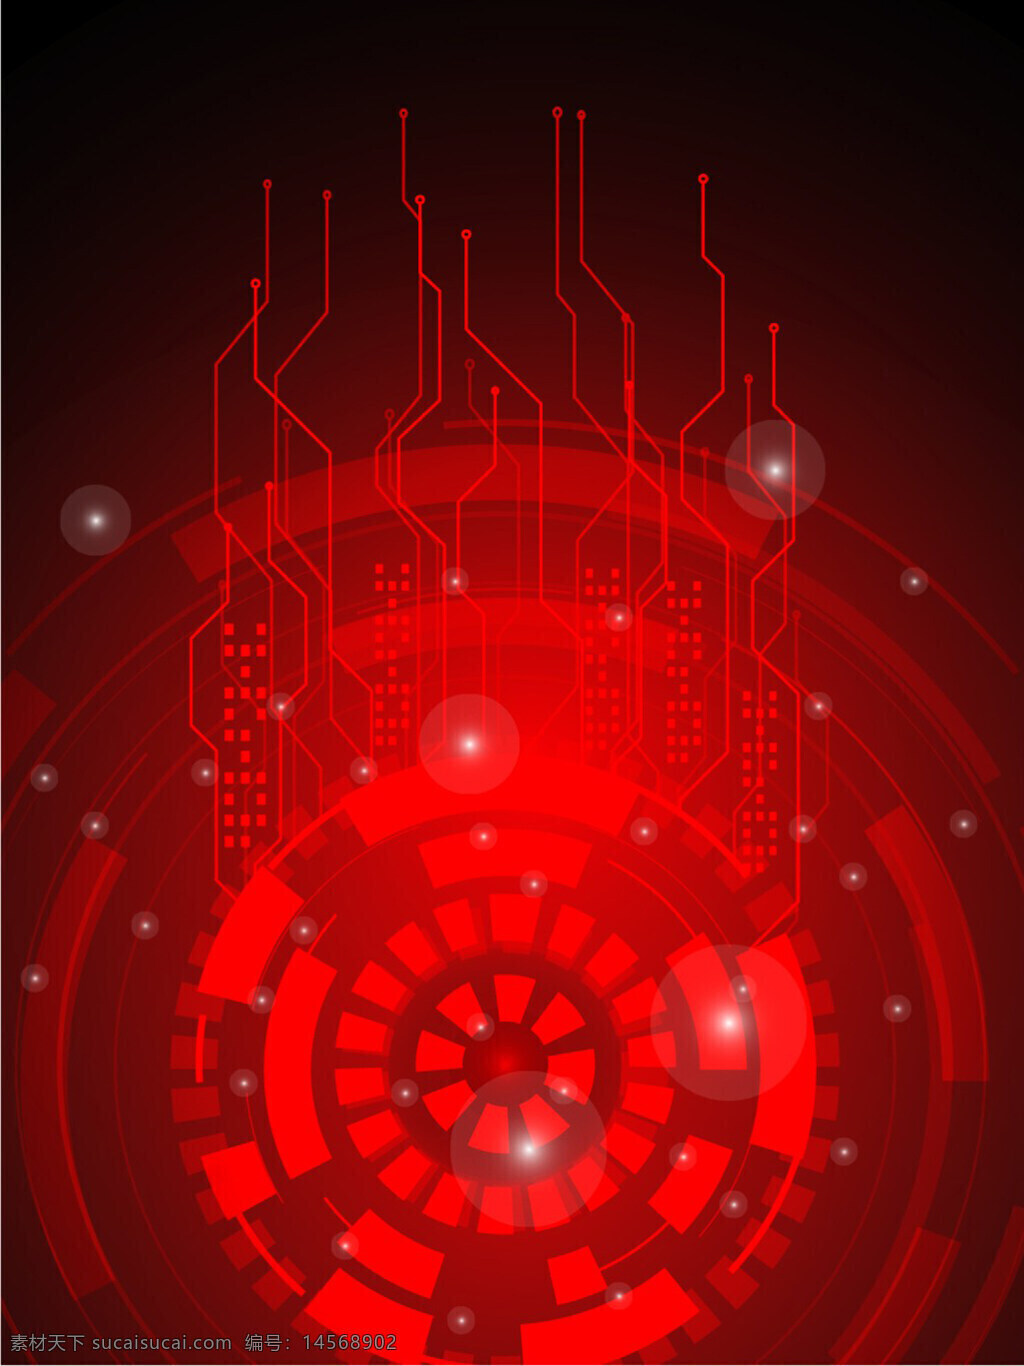 背景 边框 广告背景 红色 红色科技 卡通 矢量 手绘 图标元素 纹理边框 装饰 装饰图案